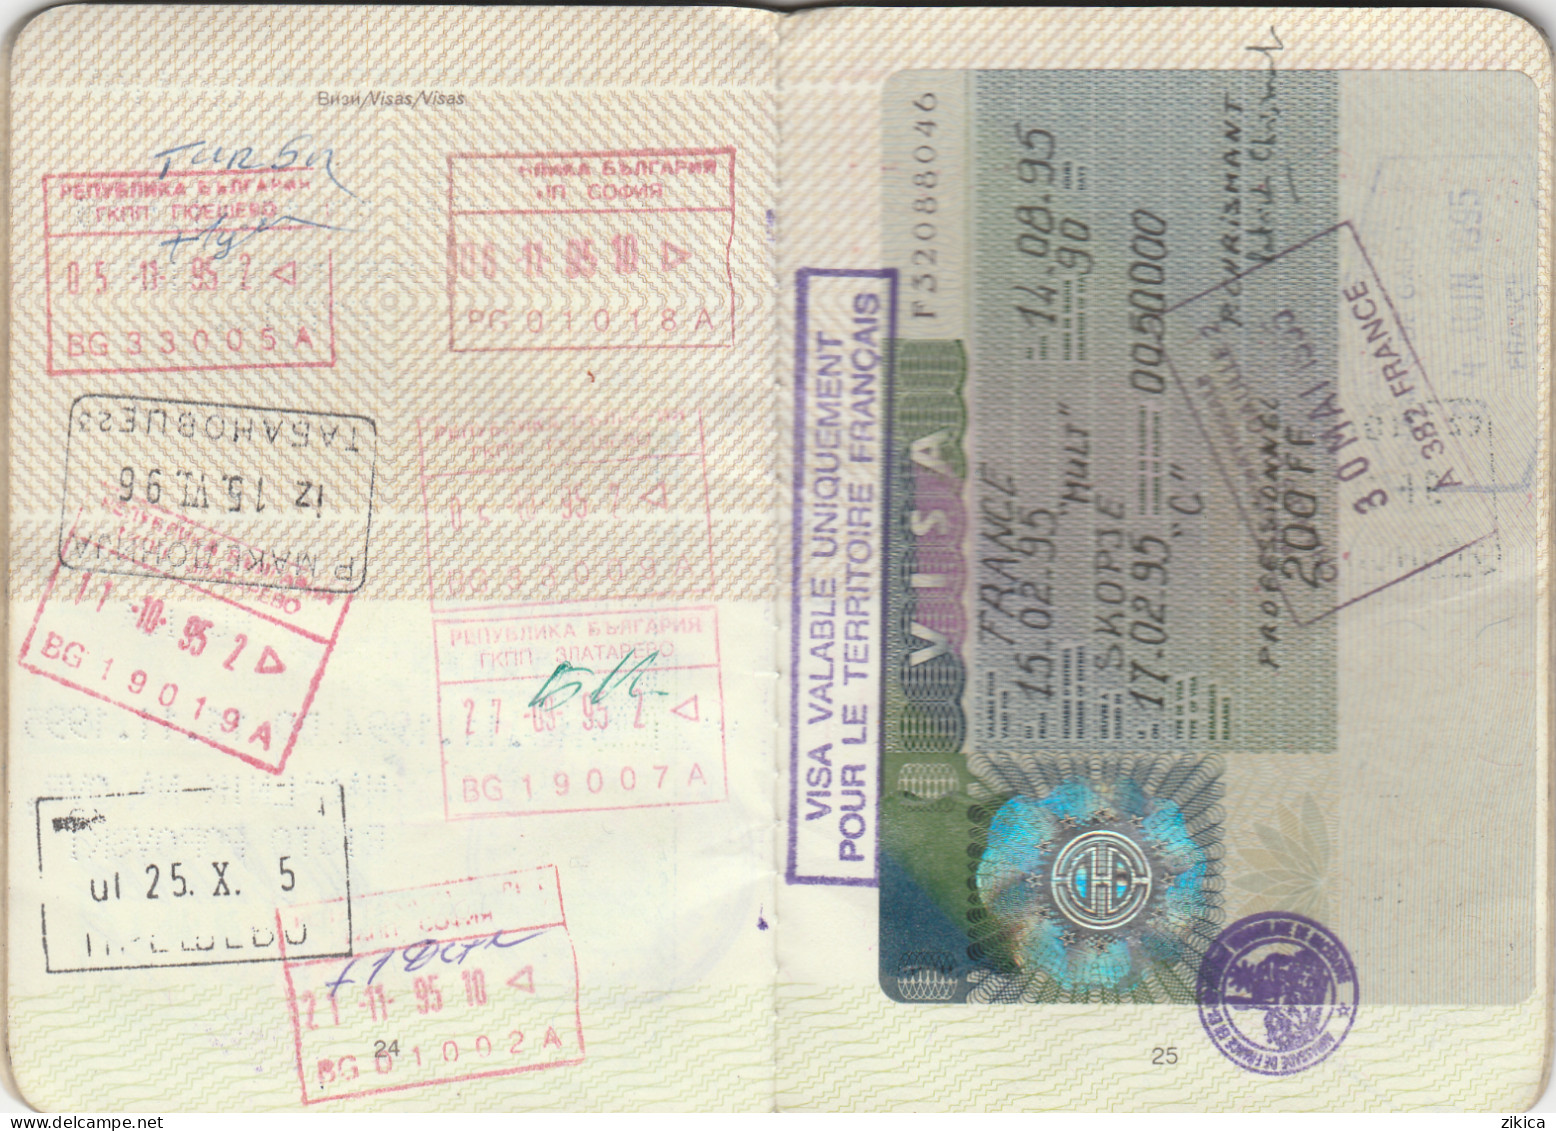 Passeport,passport,pasaporte, reisepass,Macedonia - visas...